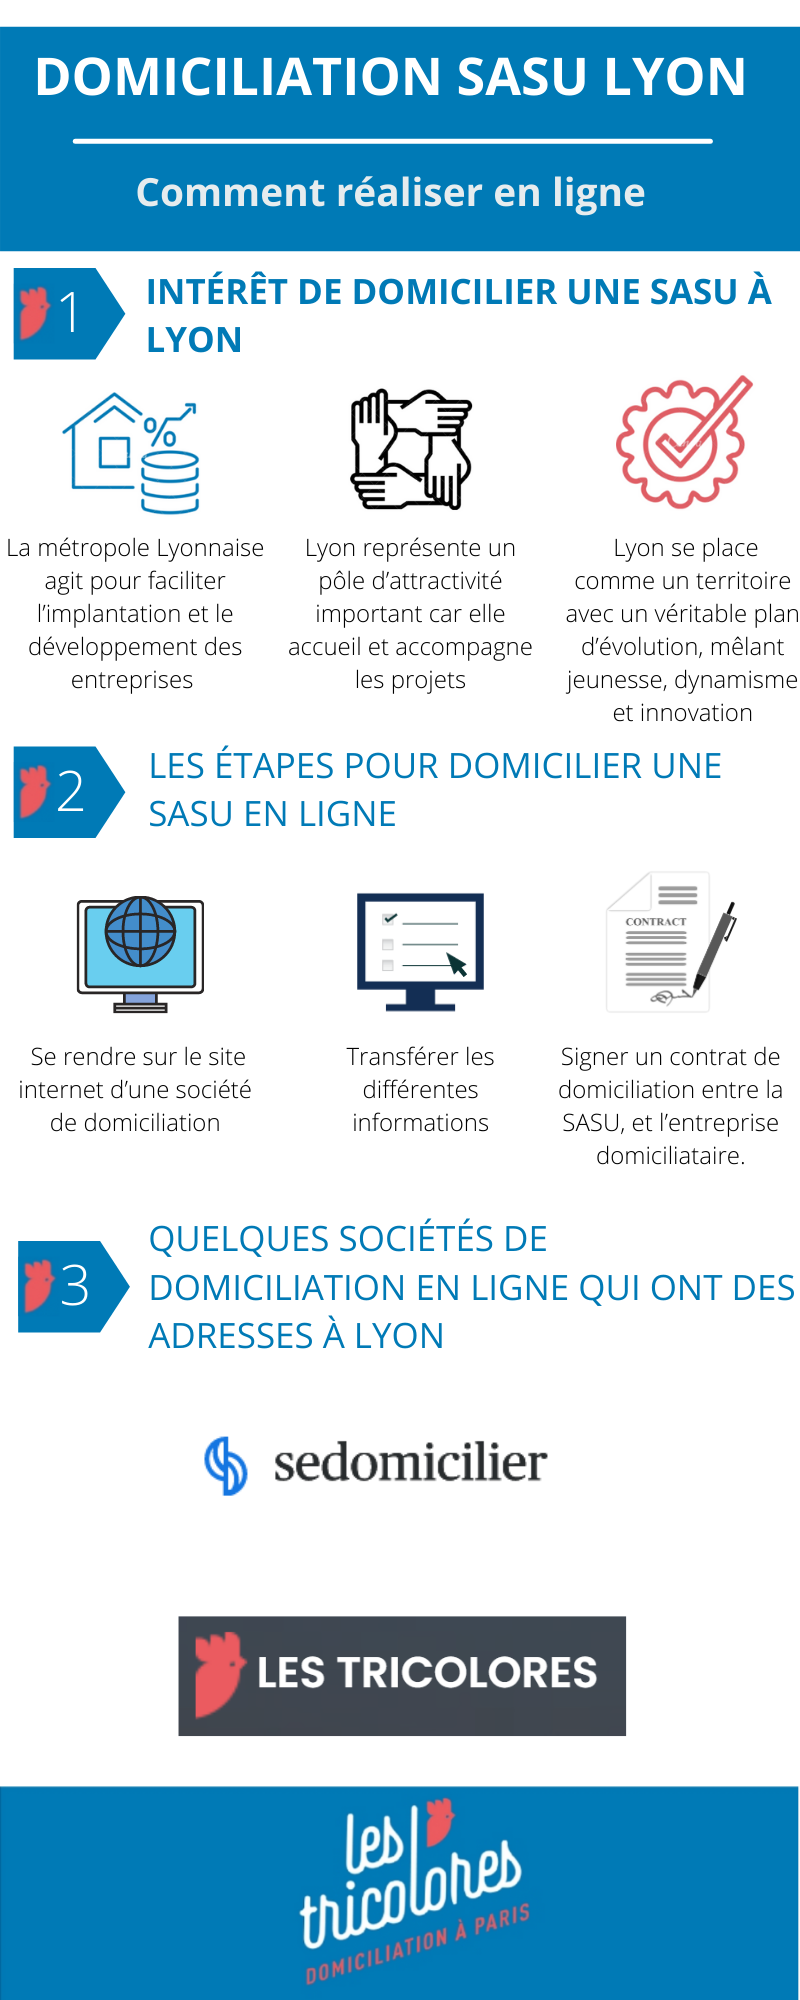 Domiciliation SASU Lyon: comment réaliser en ligne